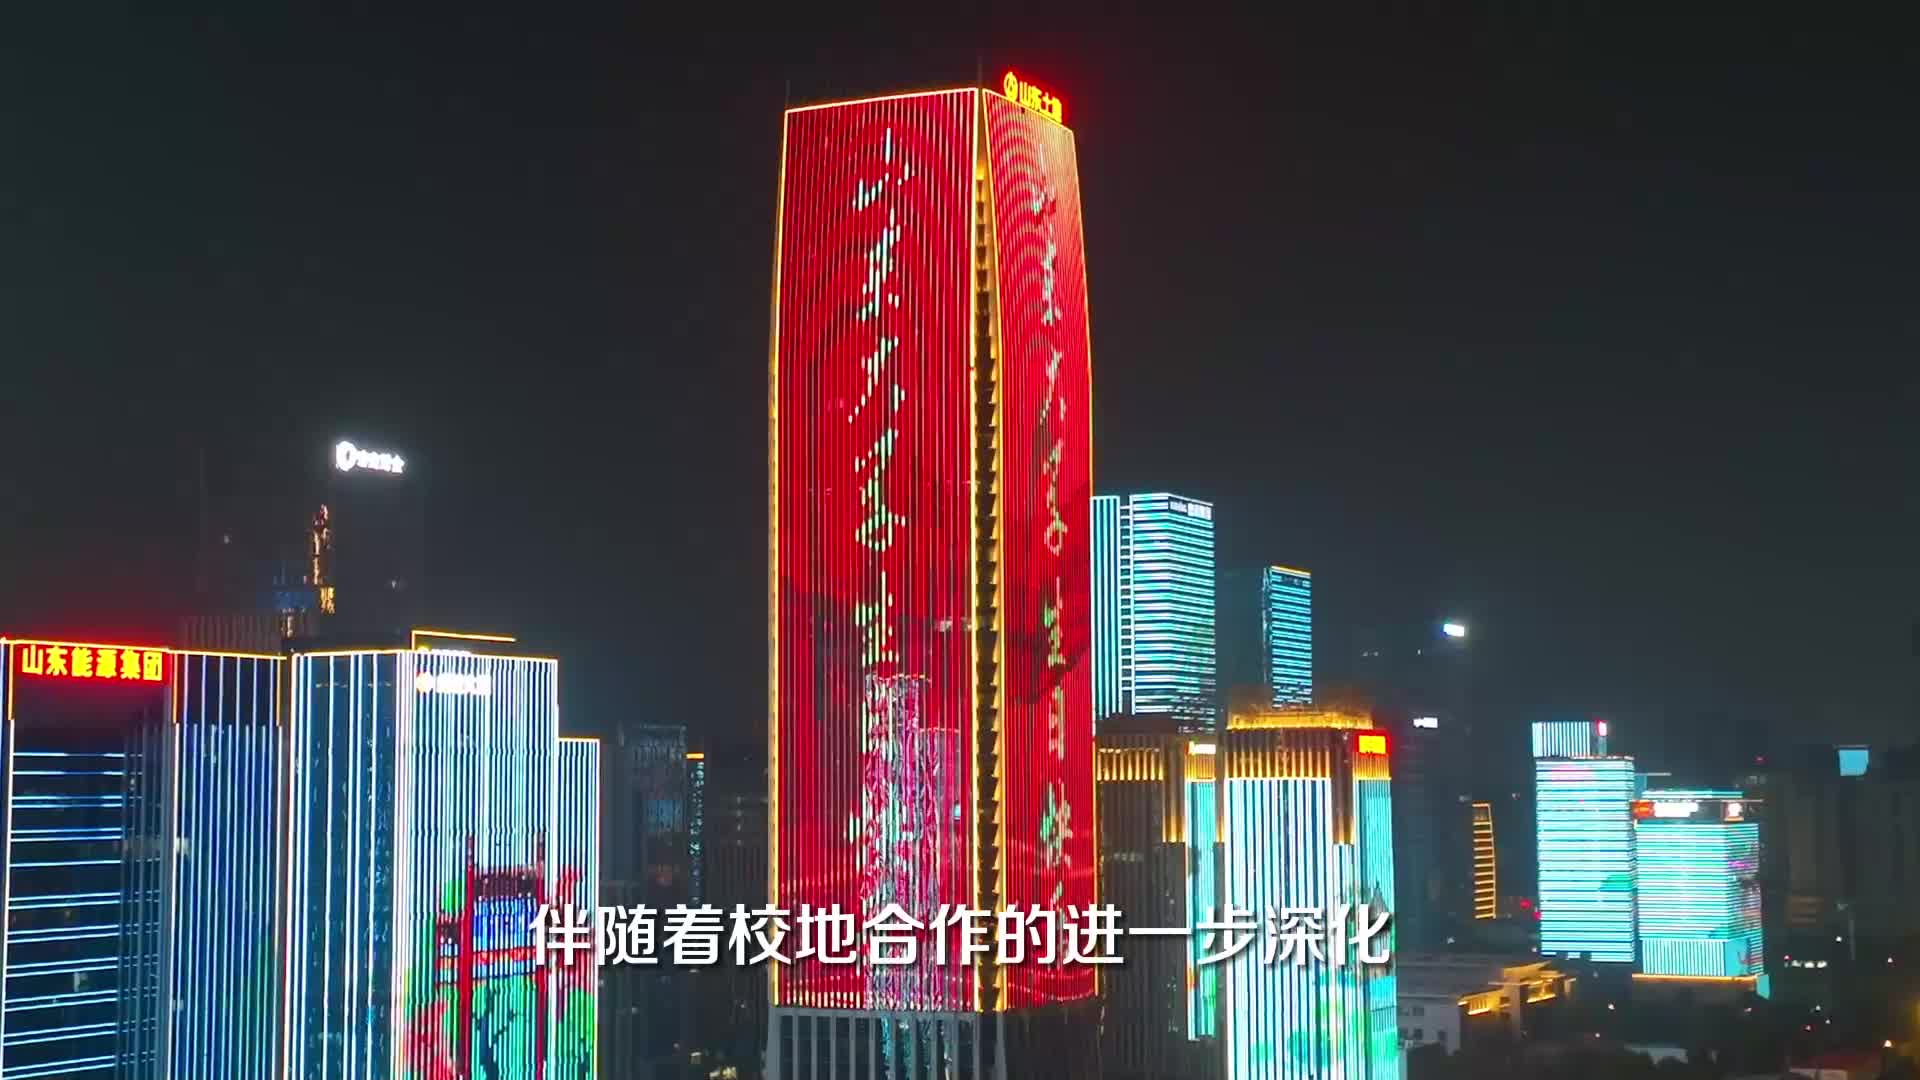 山东大学建校122周年校庆城市灯光秀在济南上演